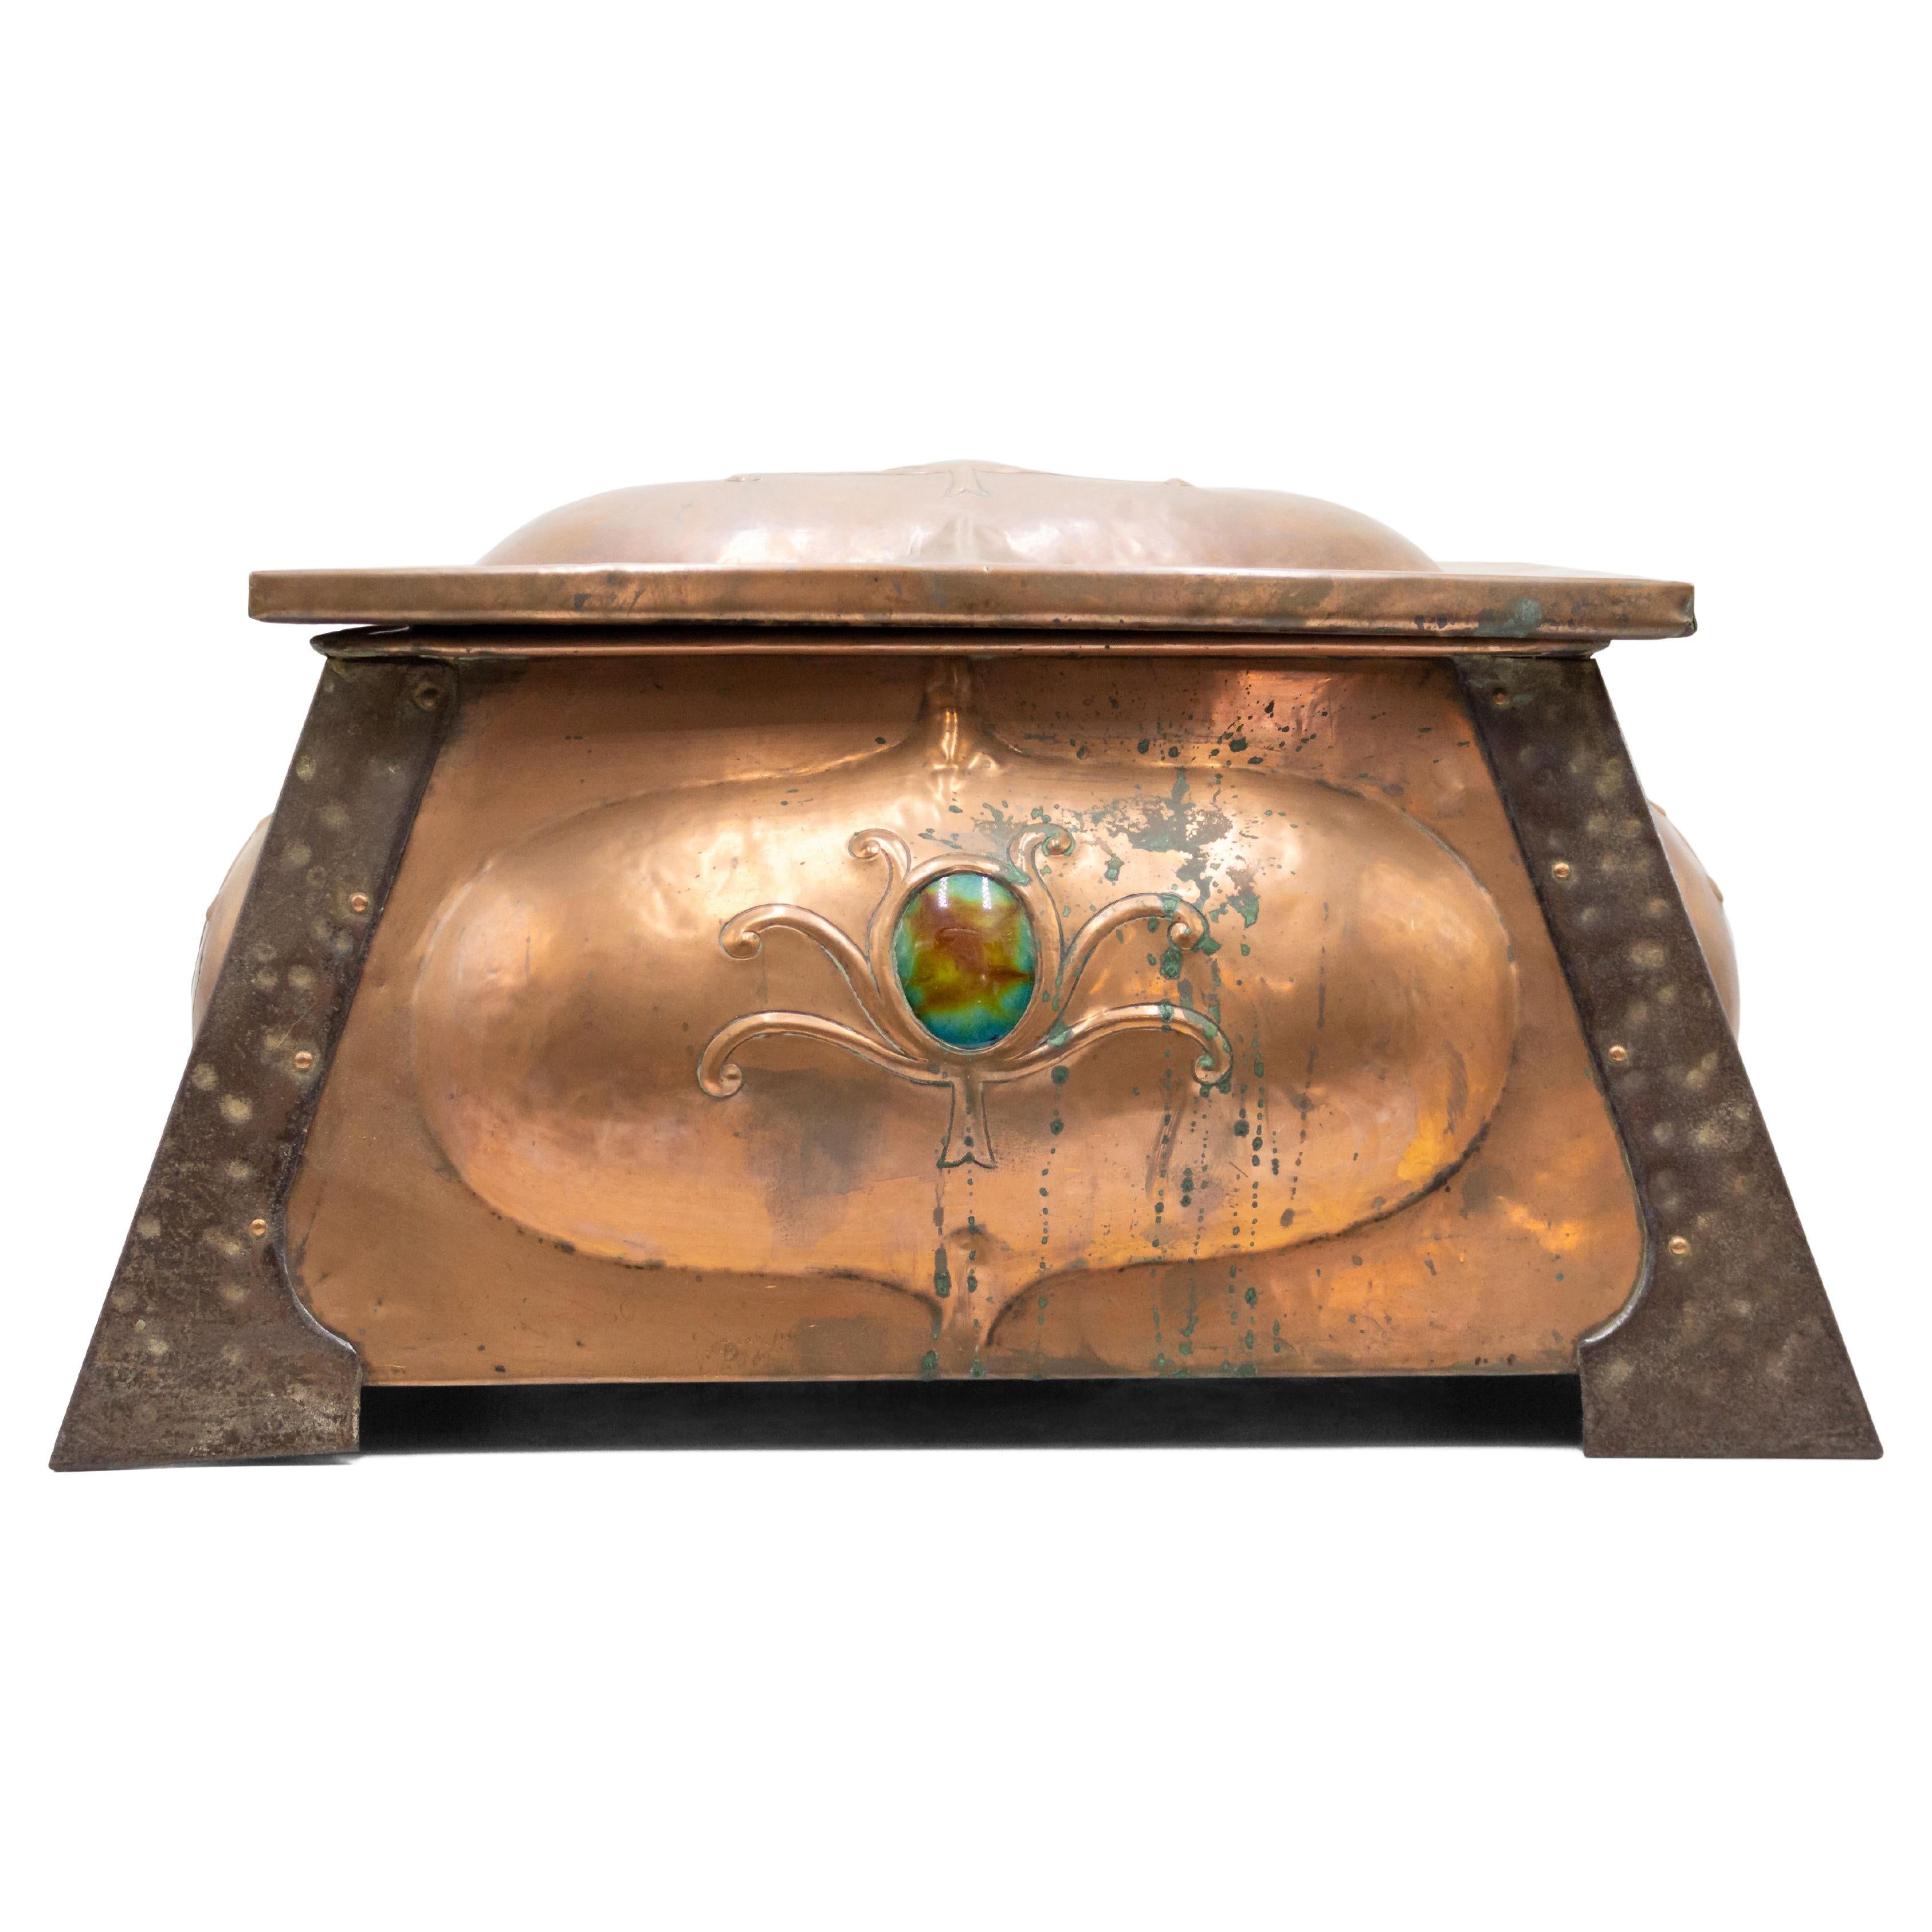 Boîte à coffret de table en cuivre du mouvement Arts & Crafts du 19ème siècle